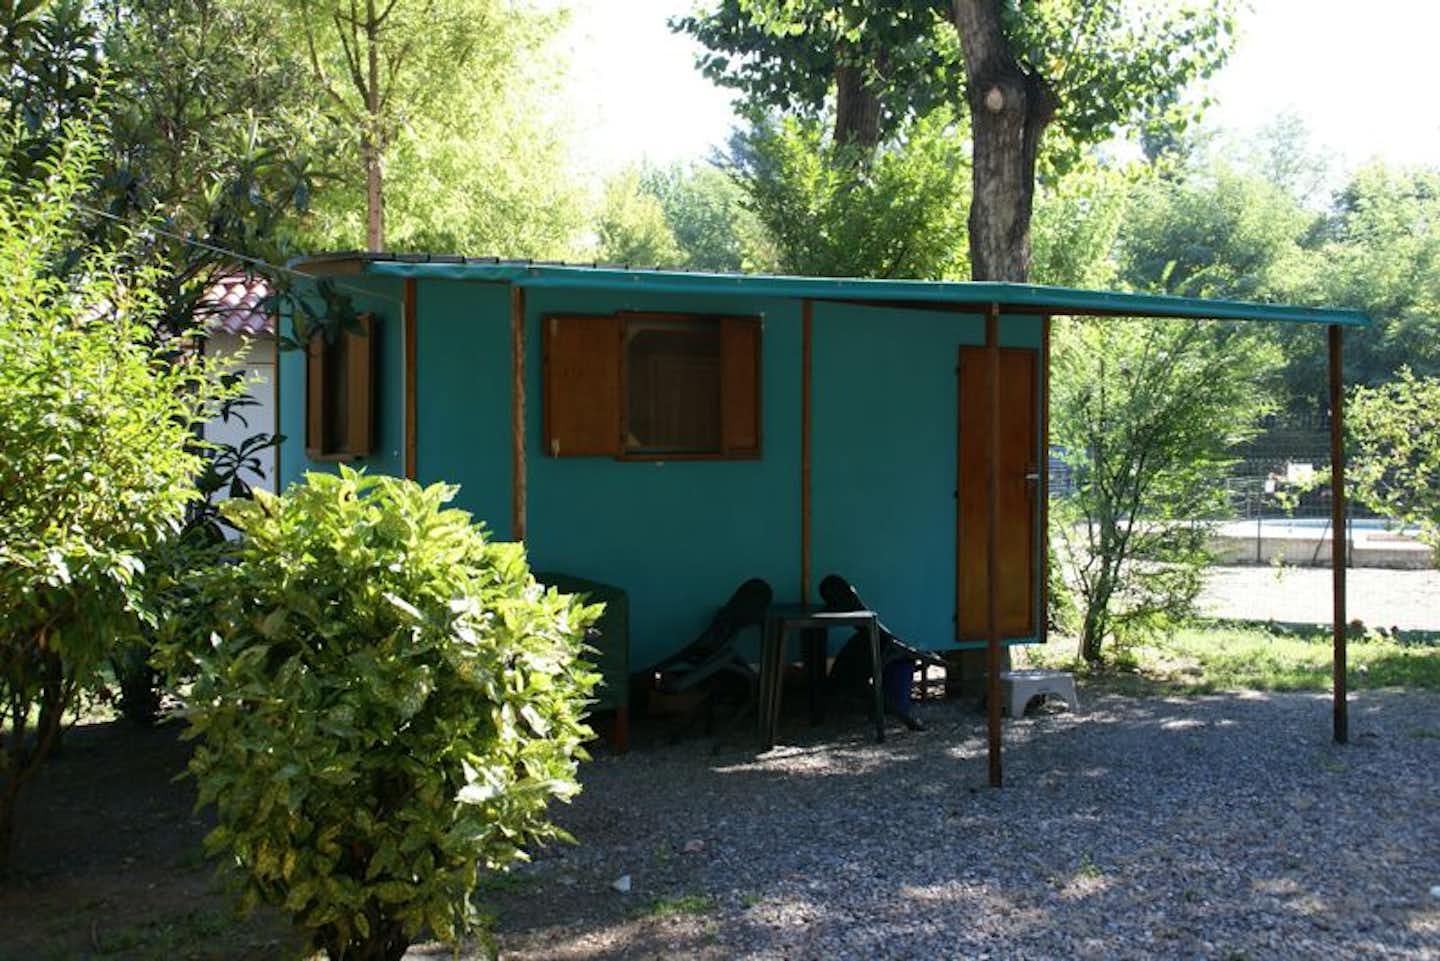 Camping Ticino - Mobilheim mit überdachter Terrasse auf dem Campingplatz